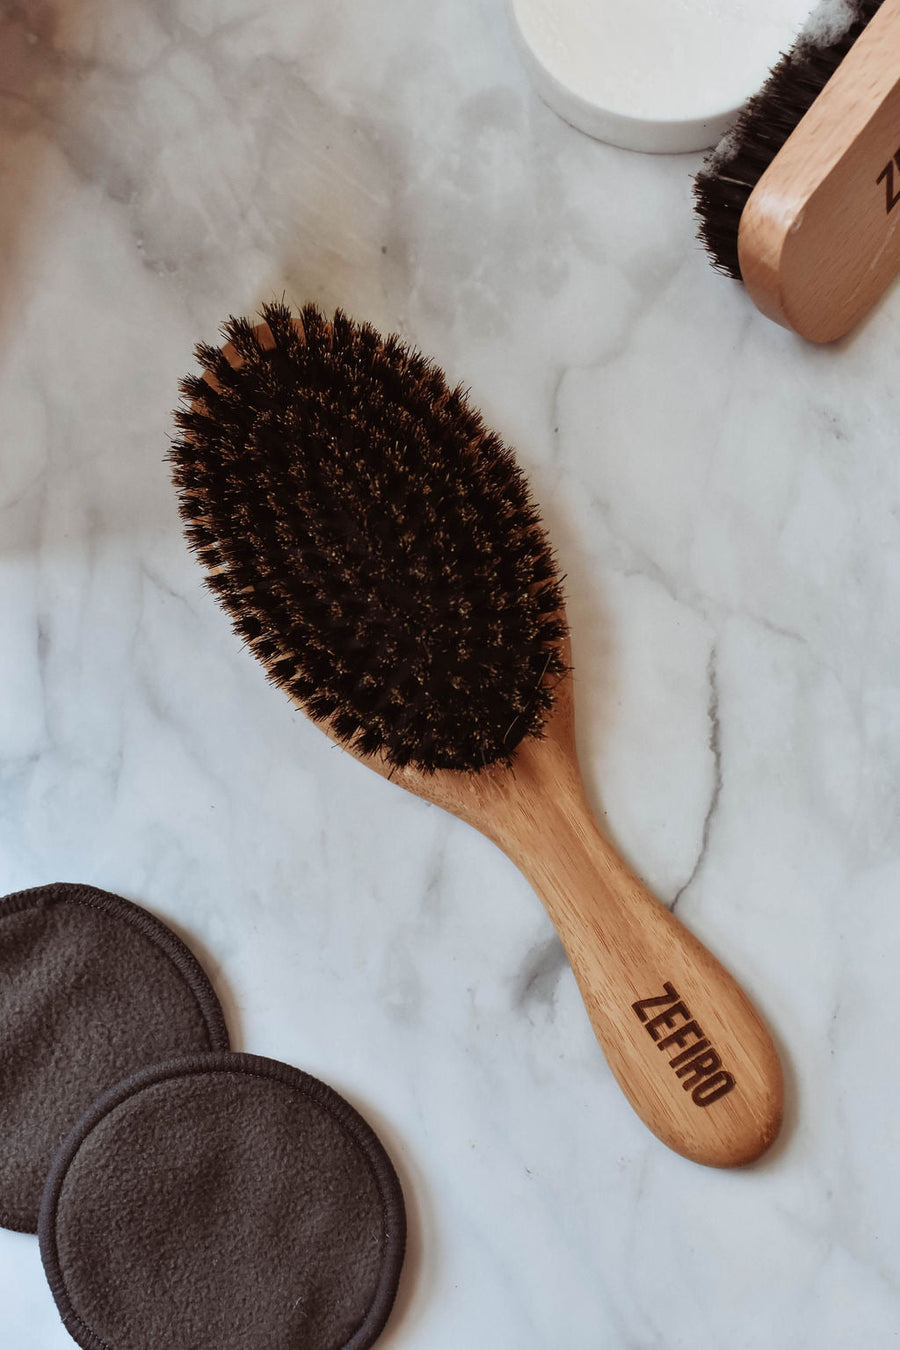 'Zefiro' Boar Bristle Hairbrush